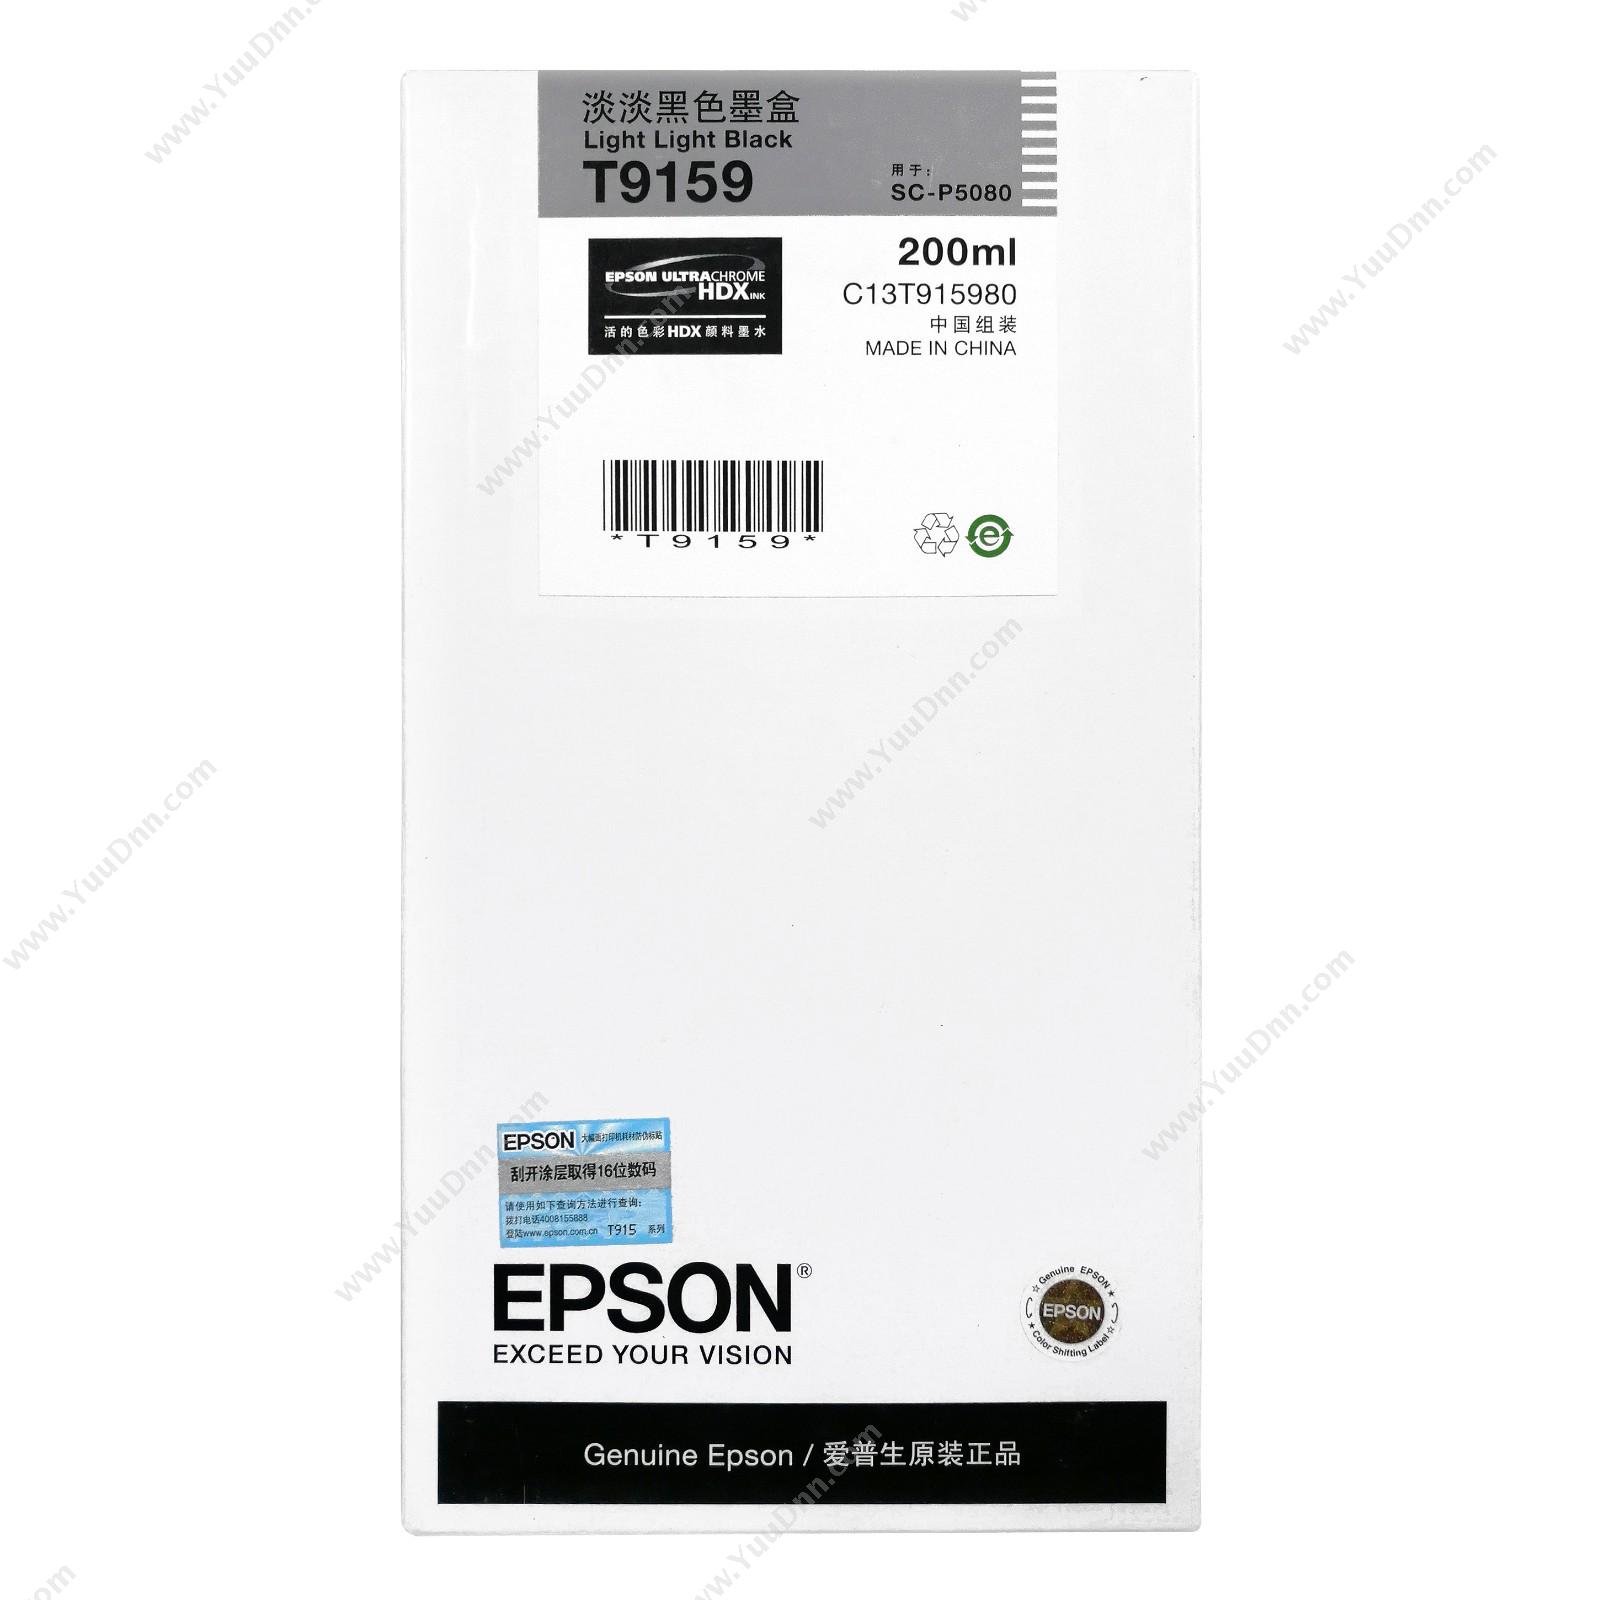 爱普生 Epson P5080淡淡黑200ml(C13T915980) 墨盒